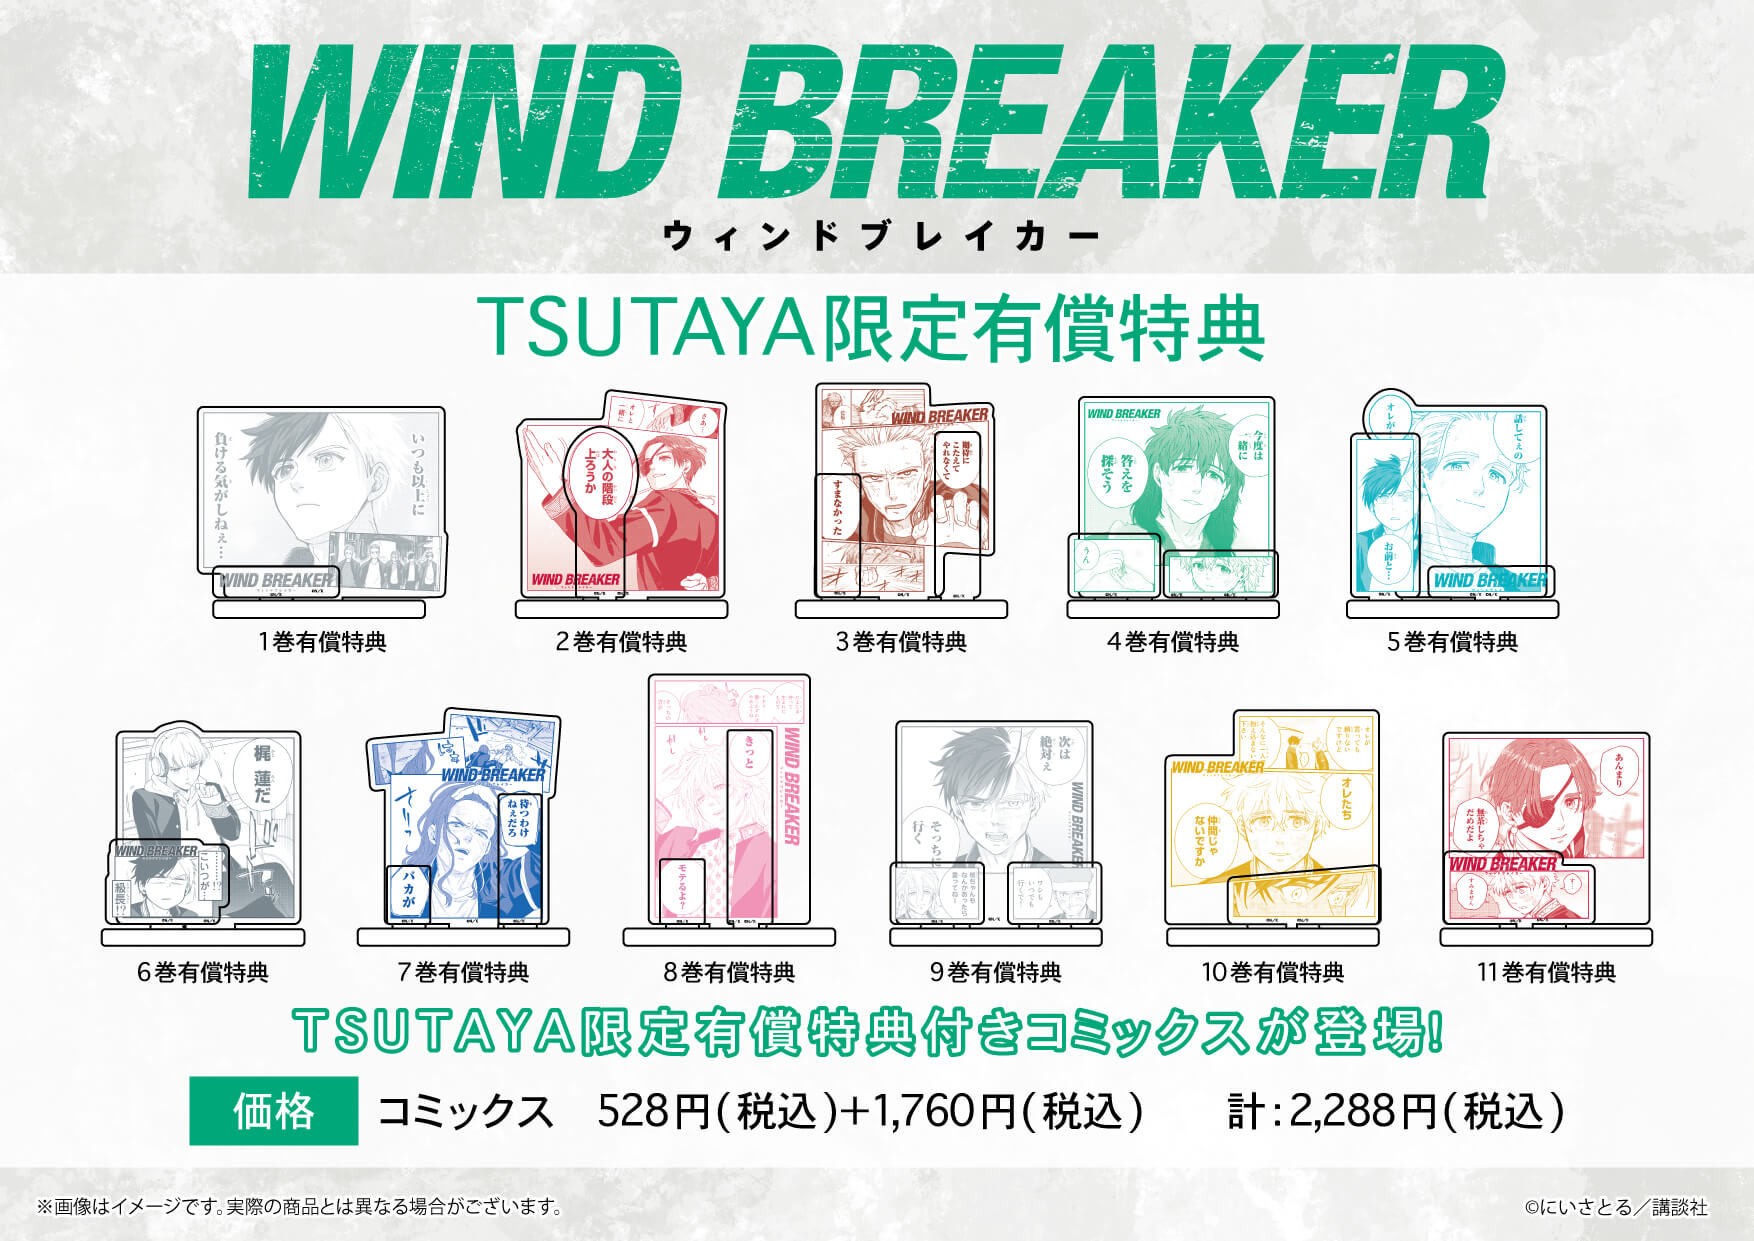 大人気『WIND BREAKER』の有償特典付きコミックスが、TSUTAYA限定で 